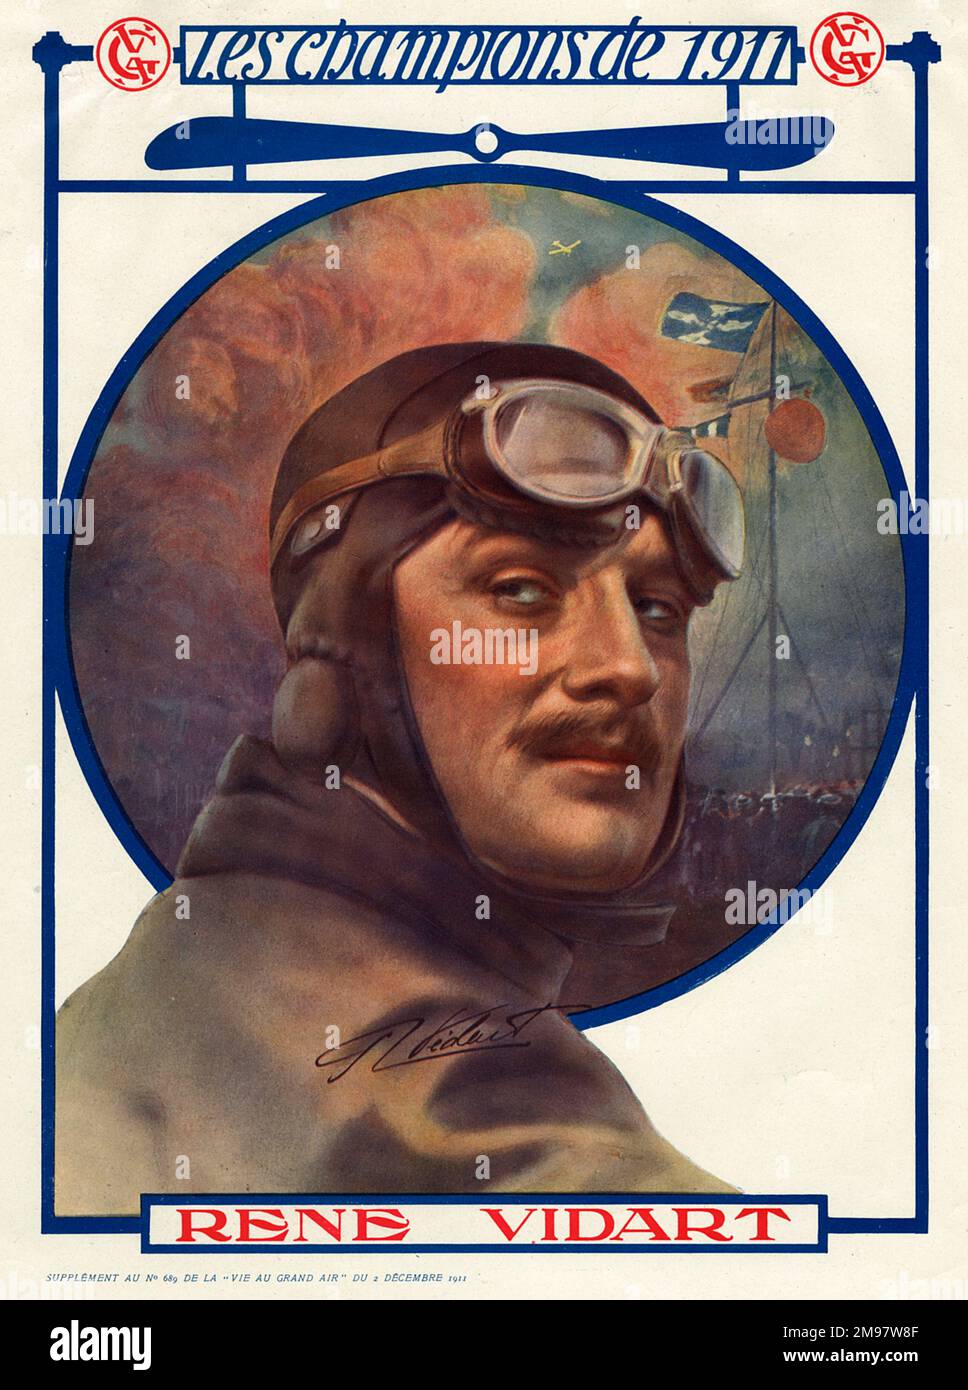 René Vidart (1890-1928), primo aviatore e pioniere francese che in seguito servì come pilota nel WW1. Foto Stock